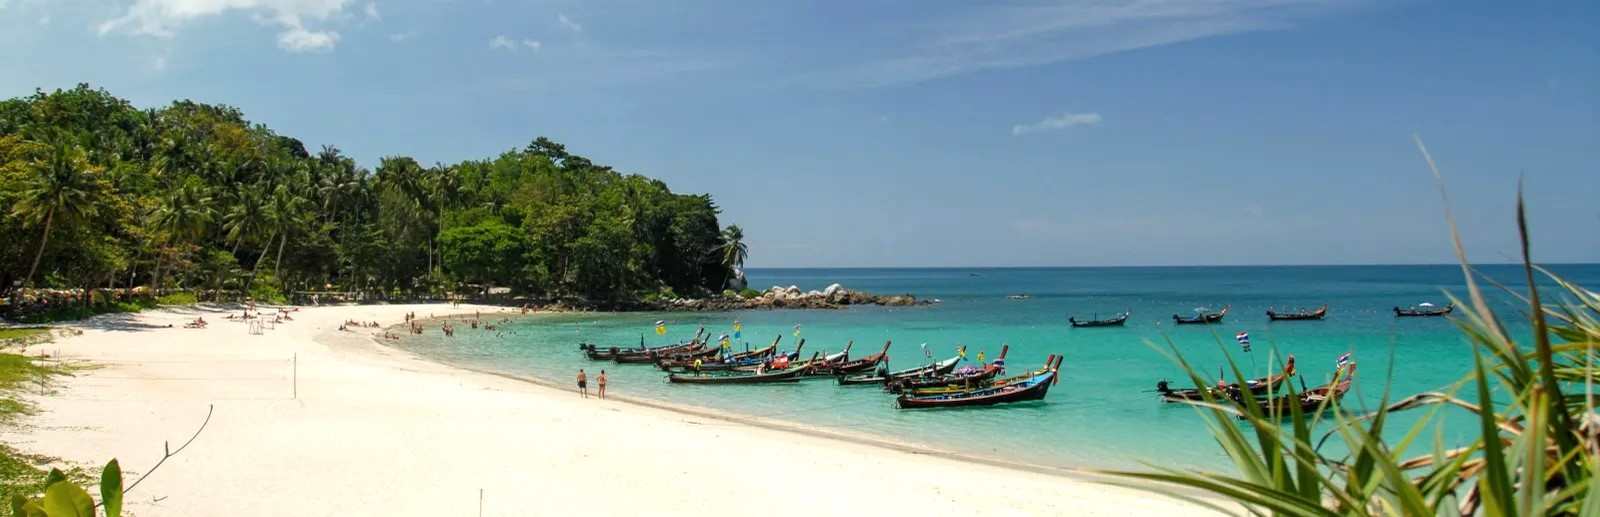 freedom-beach-phuket-thailande.jpg